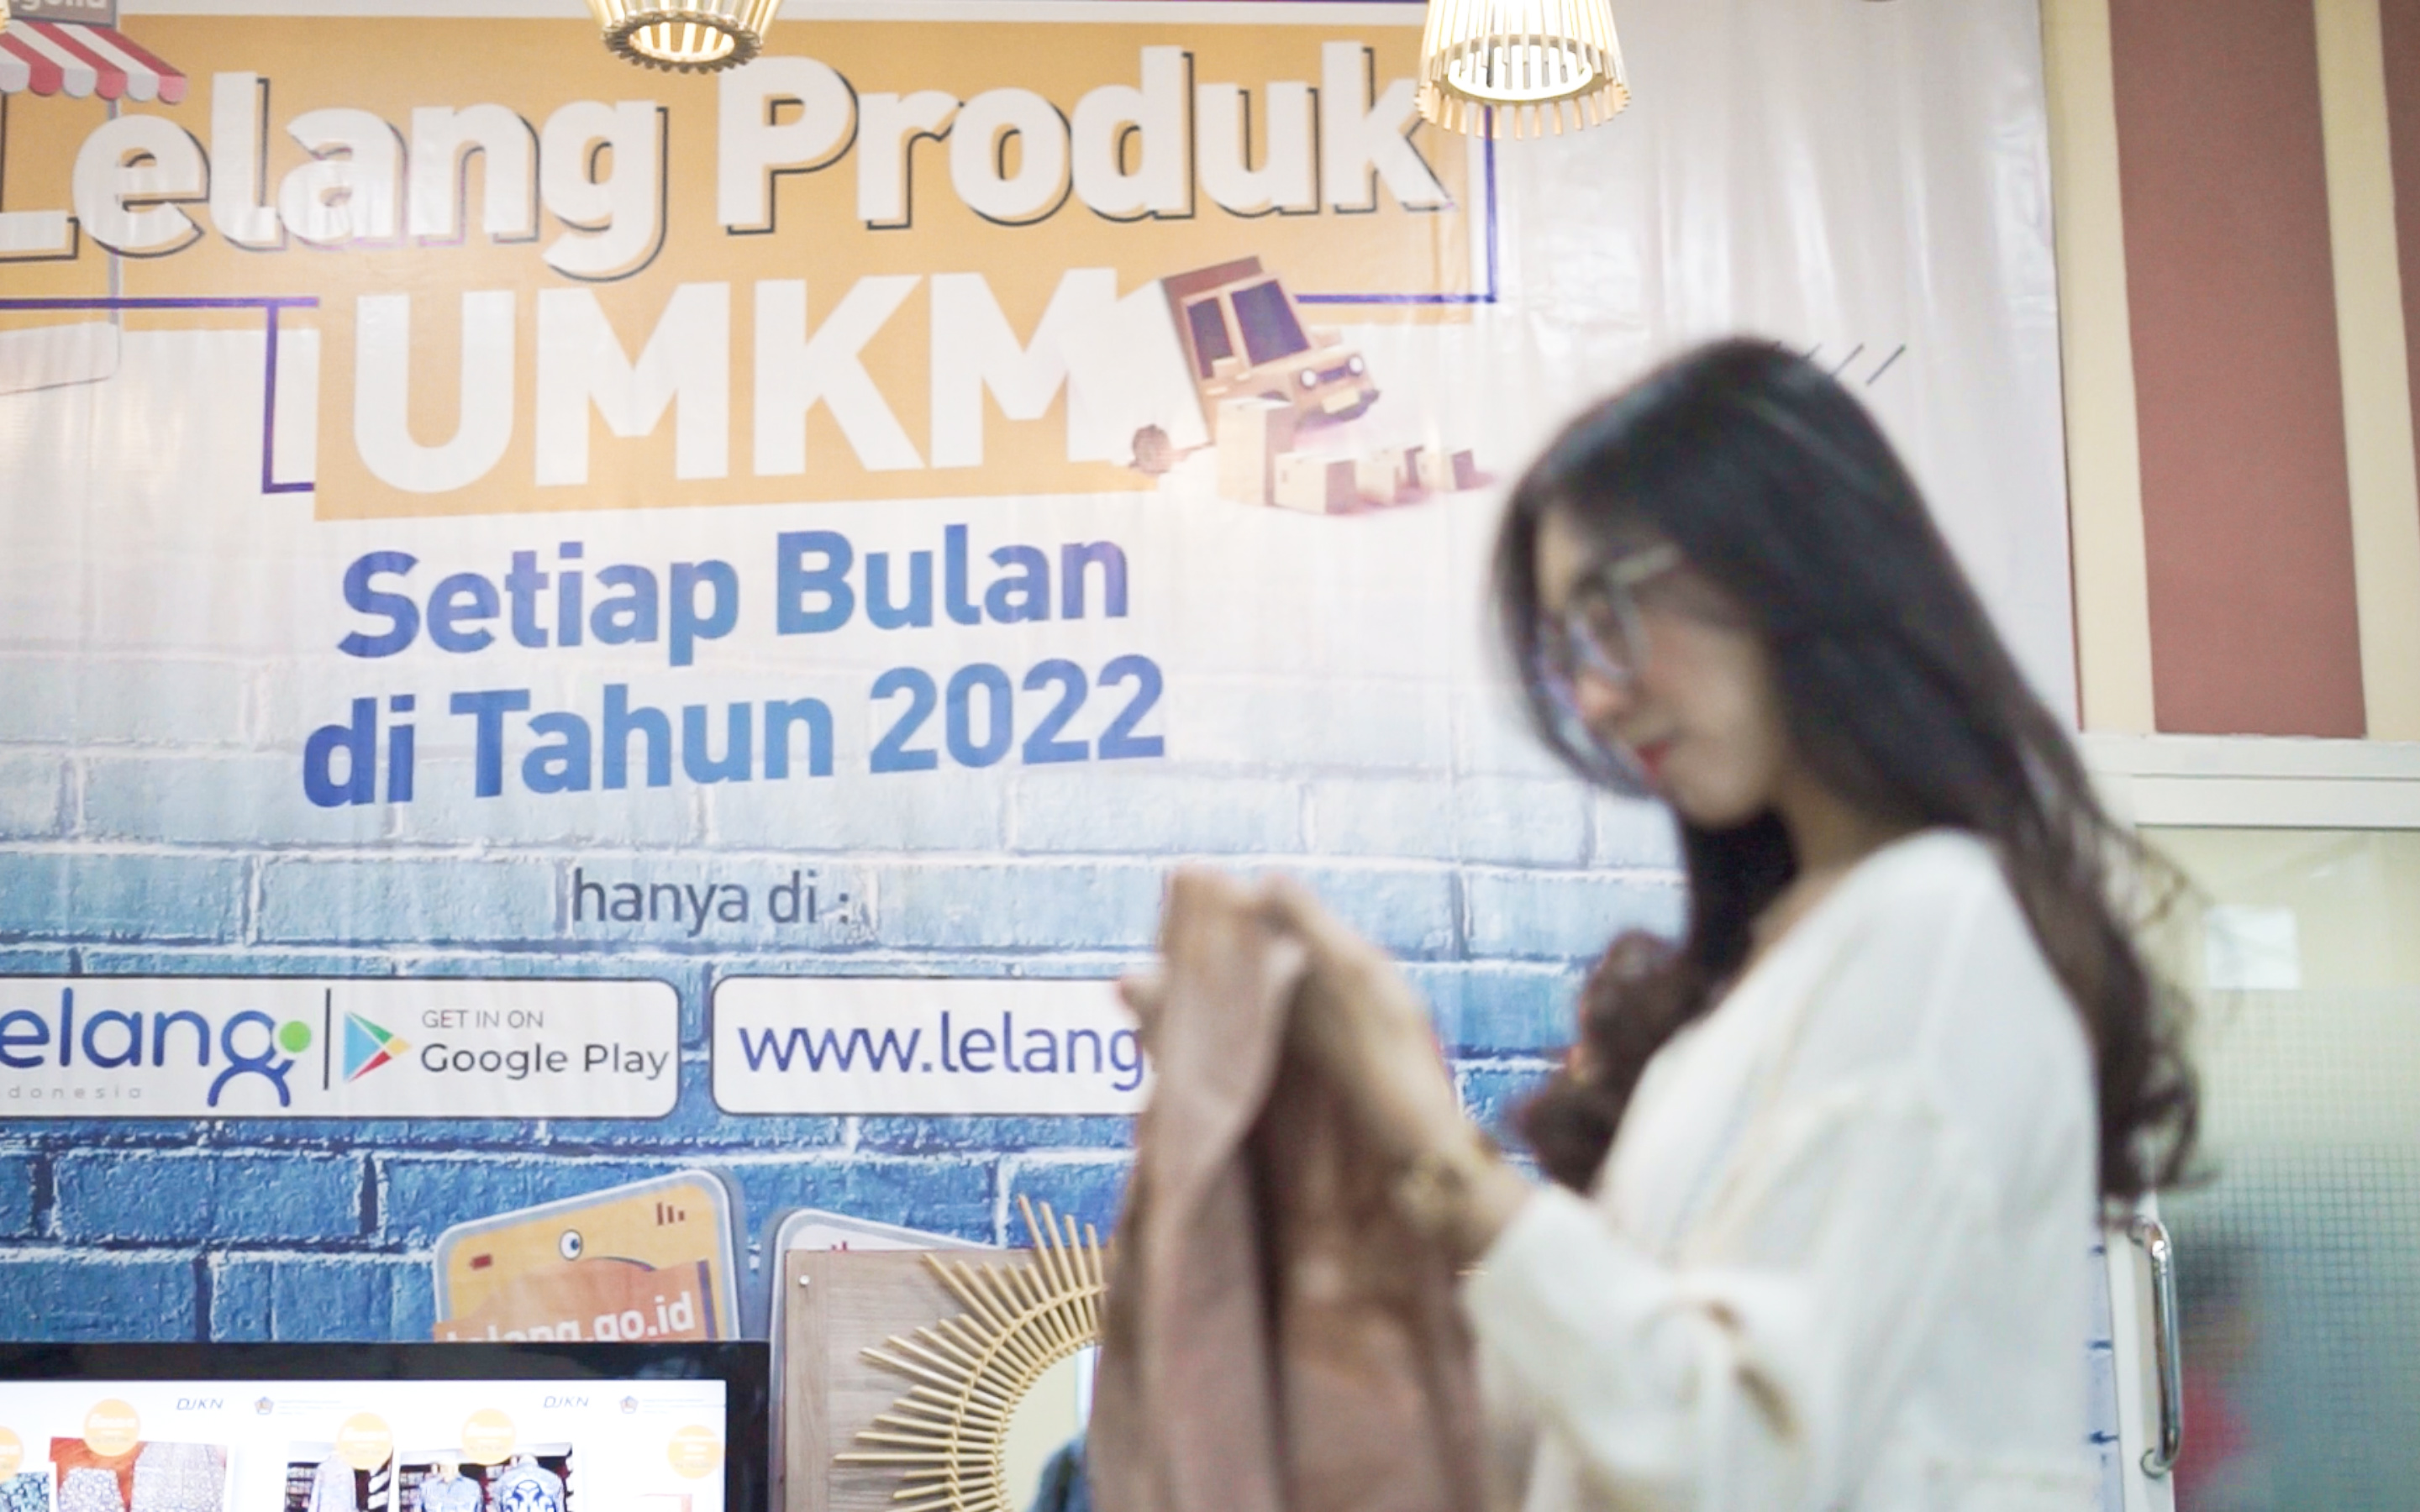 KOLEGIAL Sulawesi Tengah Juni 2022, Lebih dari Sekadar Lelang Produk